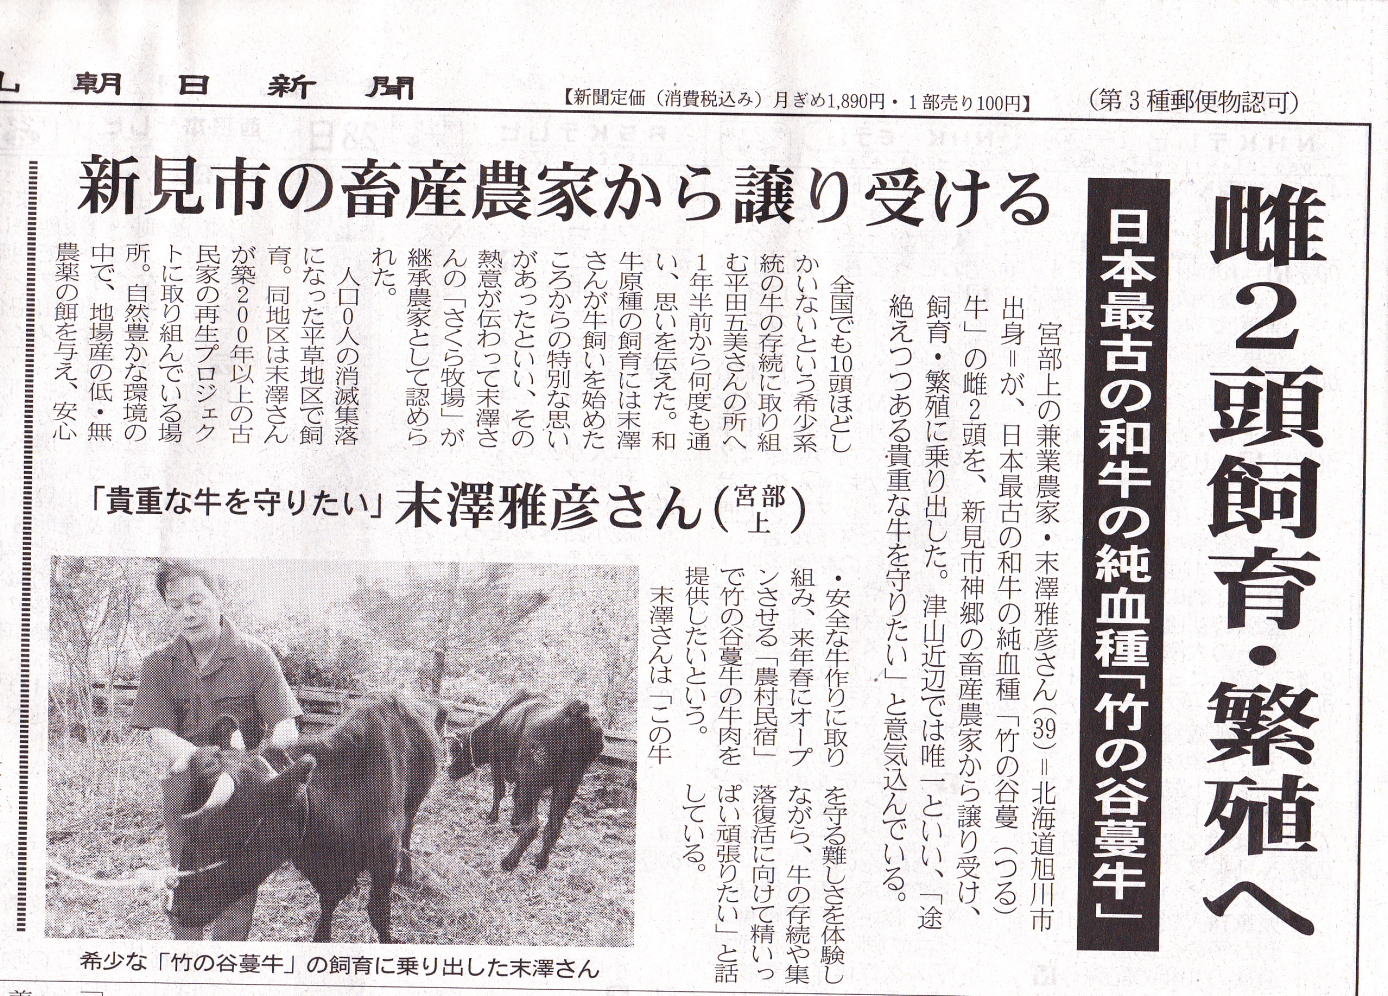 竹の谷蔓牛の記事が新聞に載りました